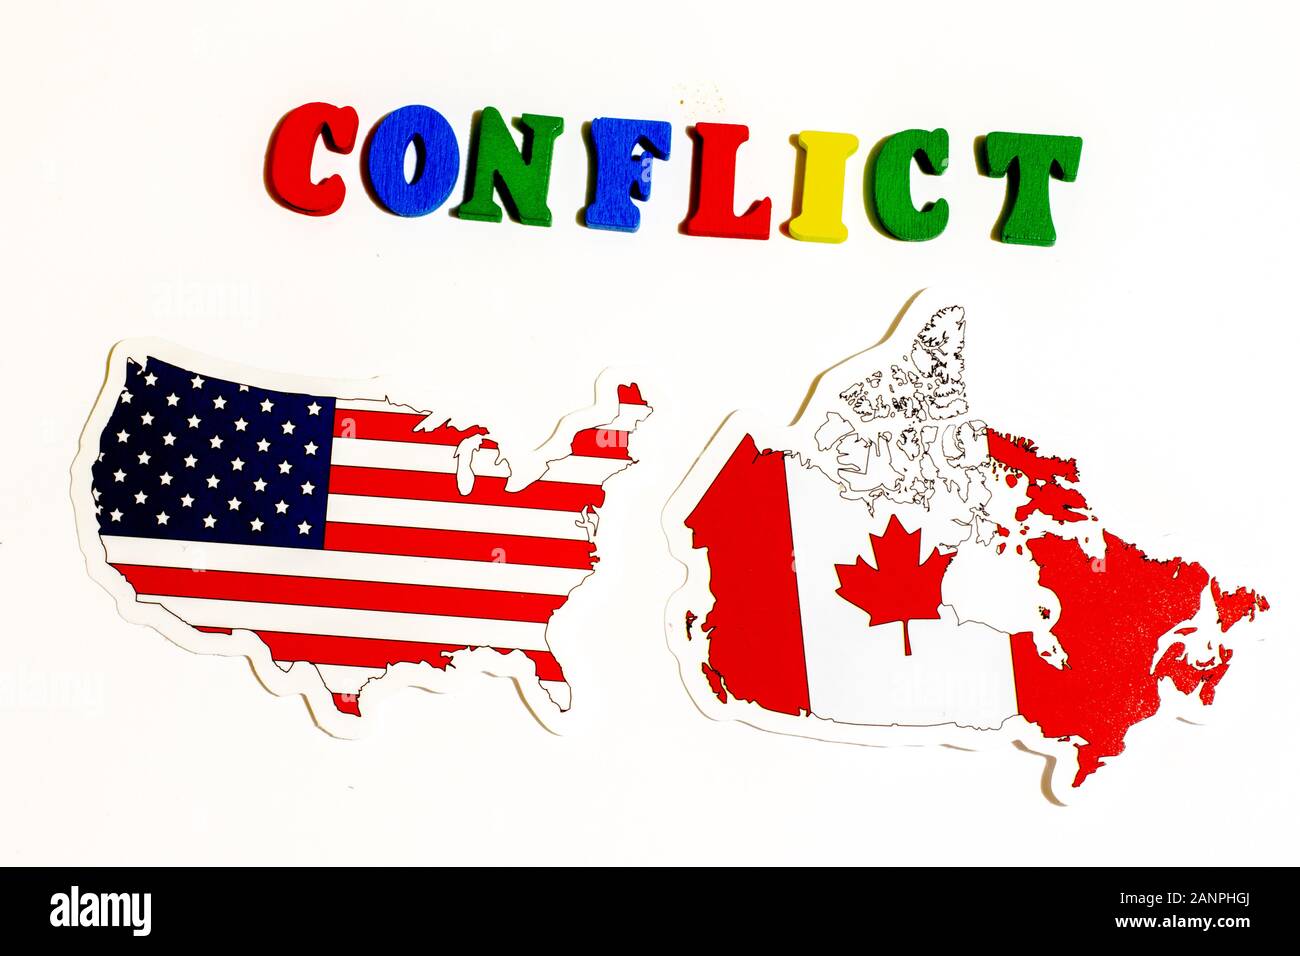 Los Angeles, Californie, États-Unis - 17 janvier 2020: Les États-Unis contre le Canada concept de conflit avec des drapeaux nationaux, éditorial illustratif Banque D'Images